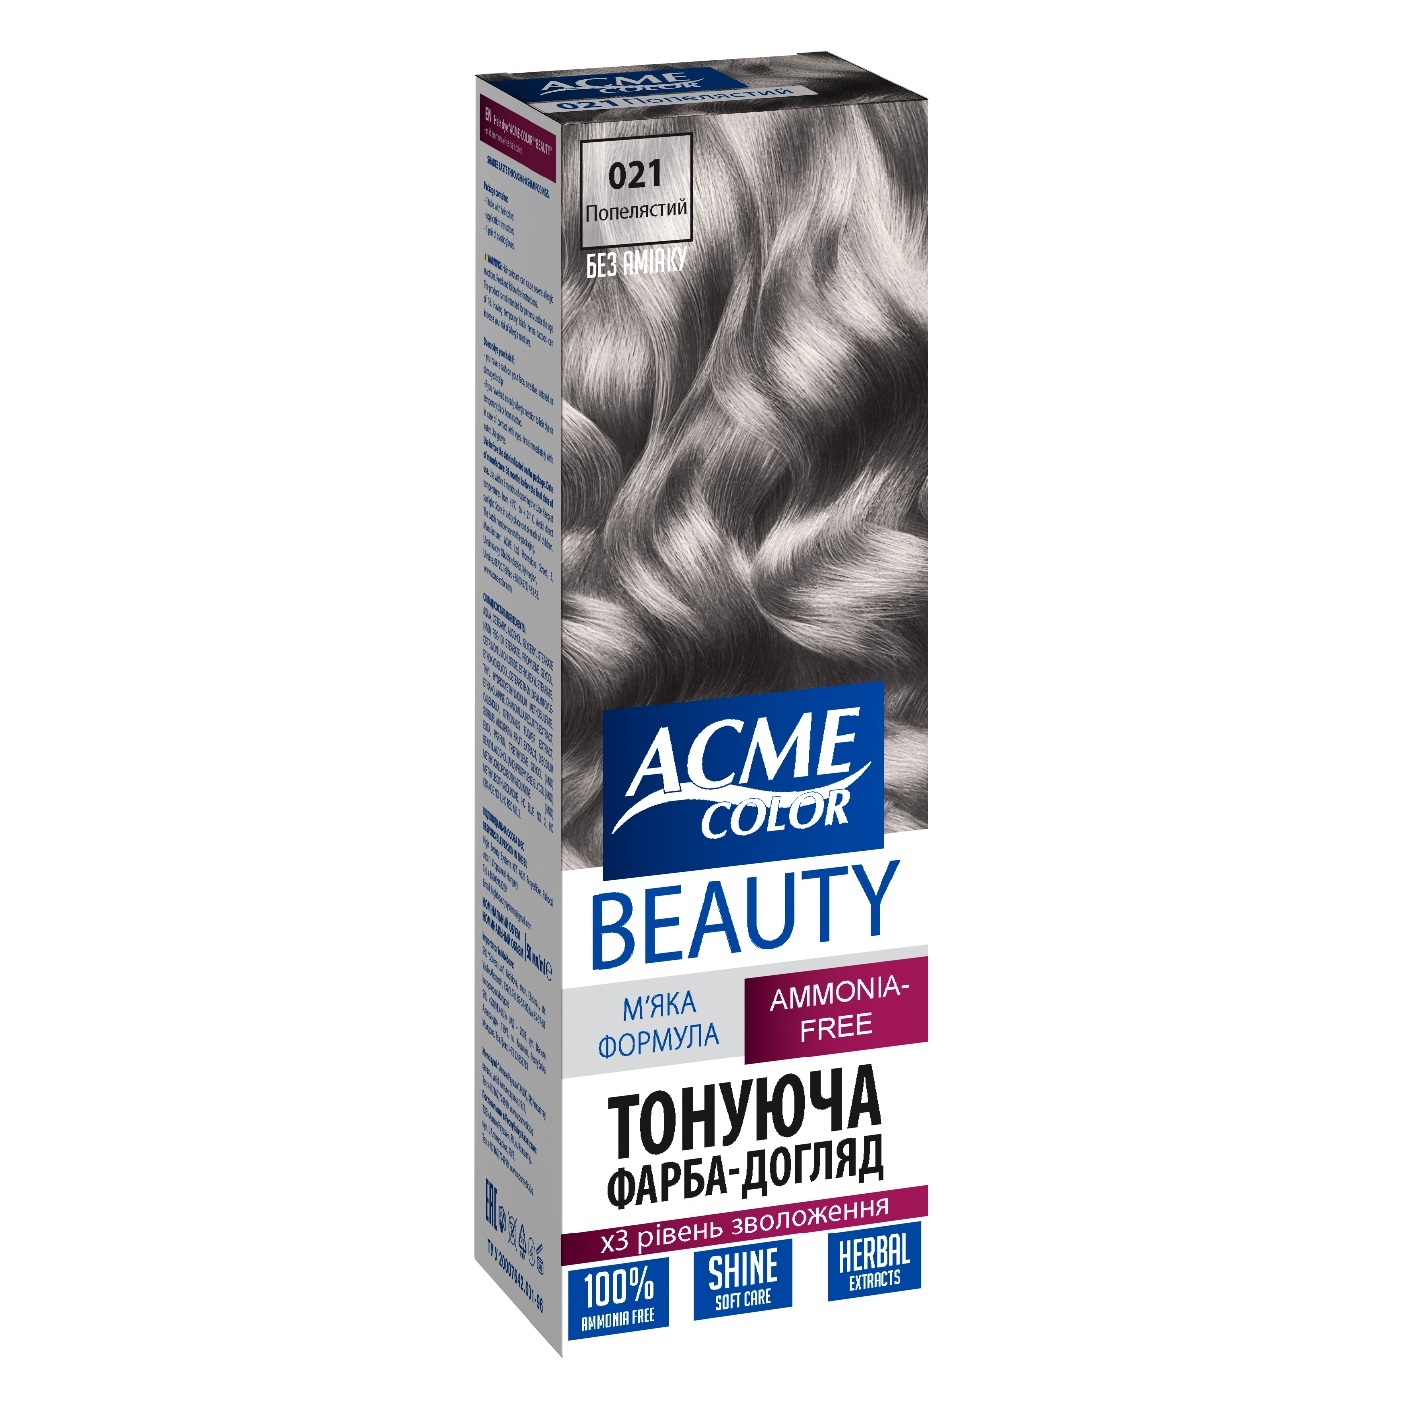 Гель-фарба для волосся Acme-color Beauty, відтінок 021 (Попелястий), 69 г - фото 1